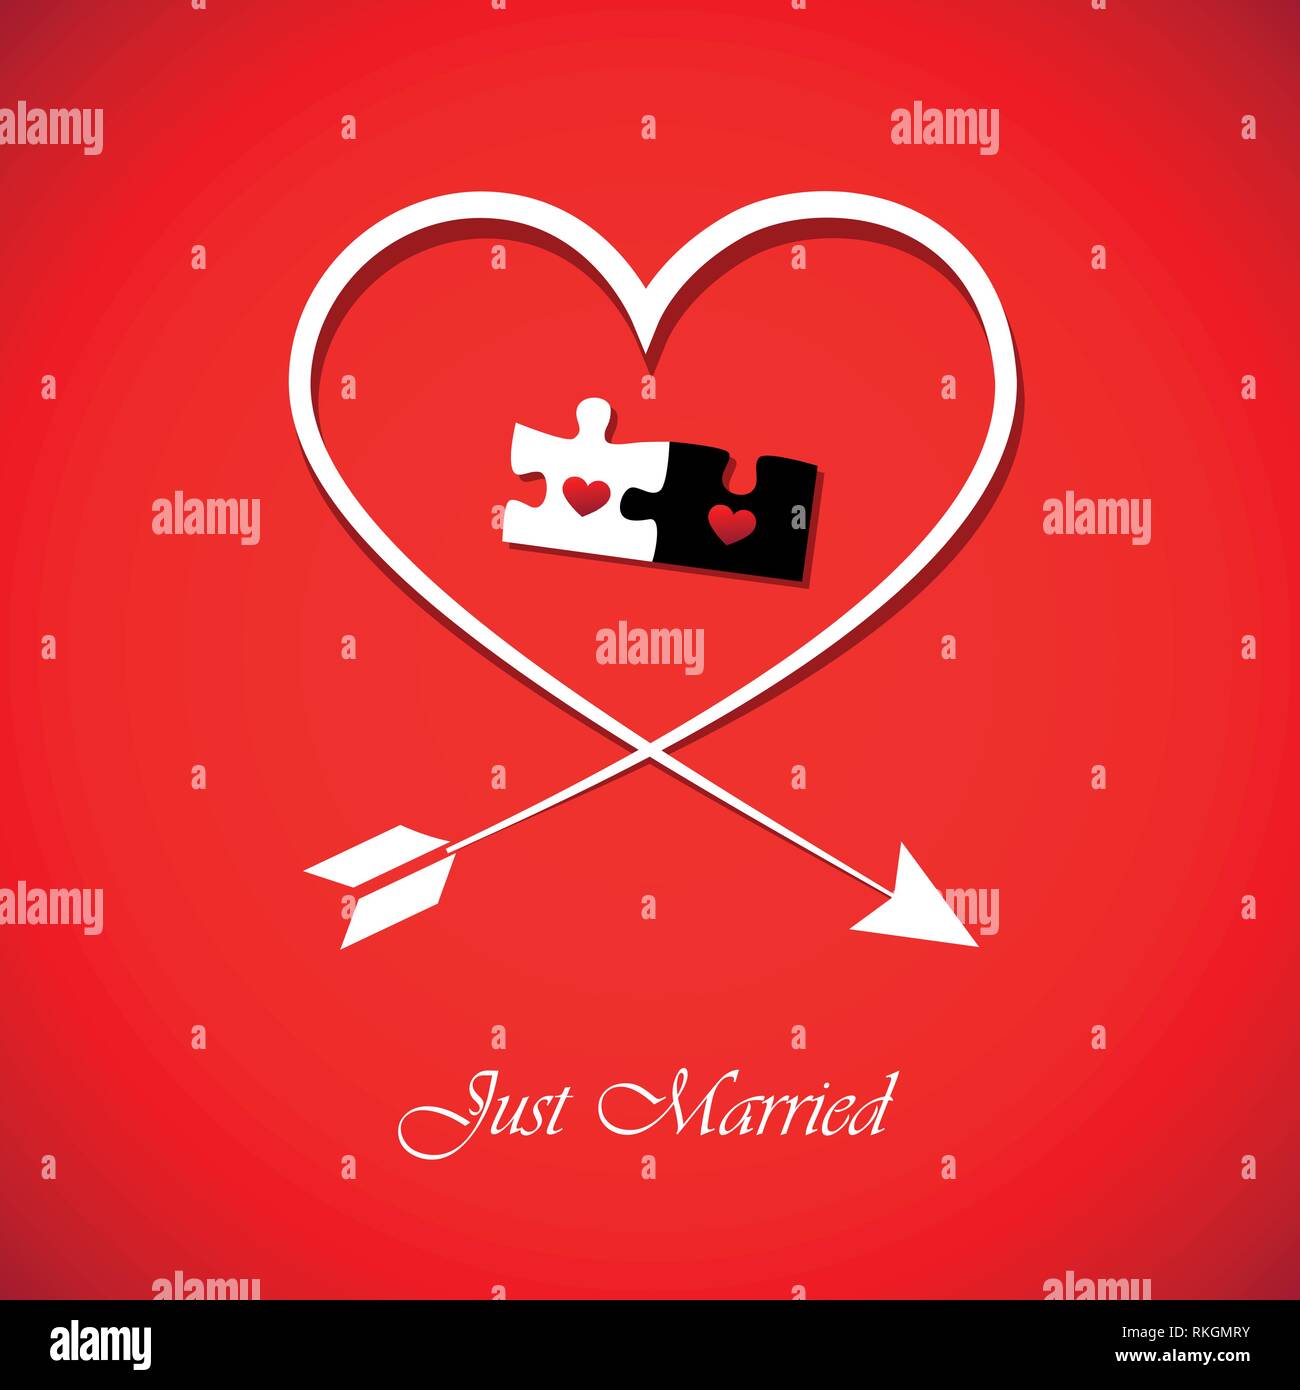 Just Married rot Einladung Karte für Hochzeit mit Herz und puzzle Vektor-illustration EPS 10. Stock Vektor